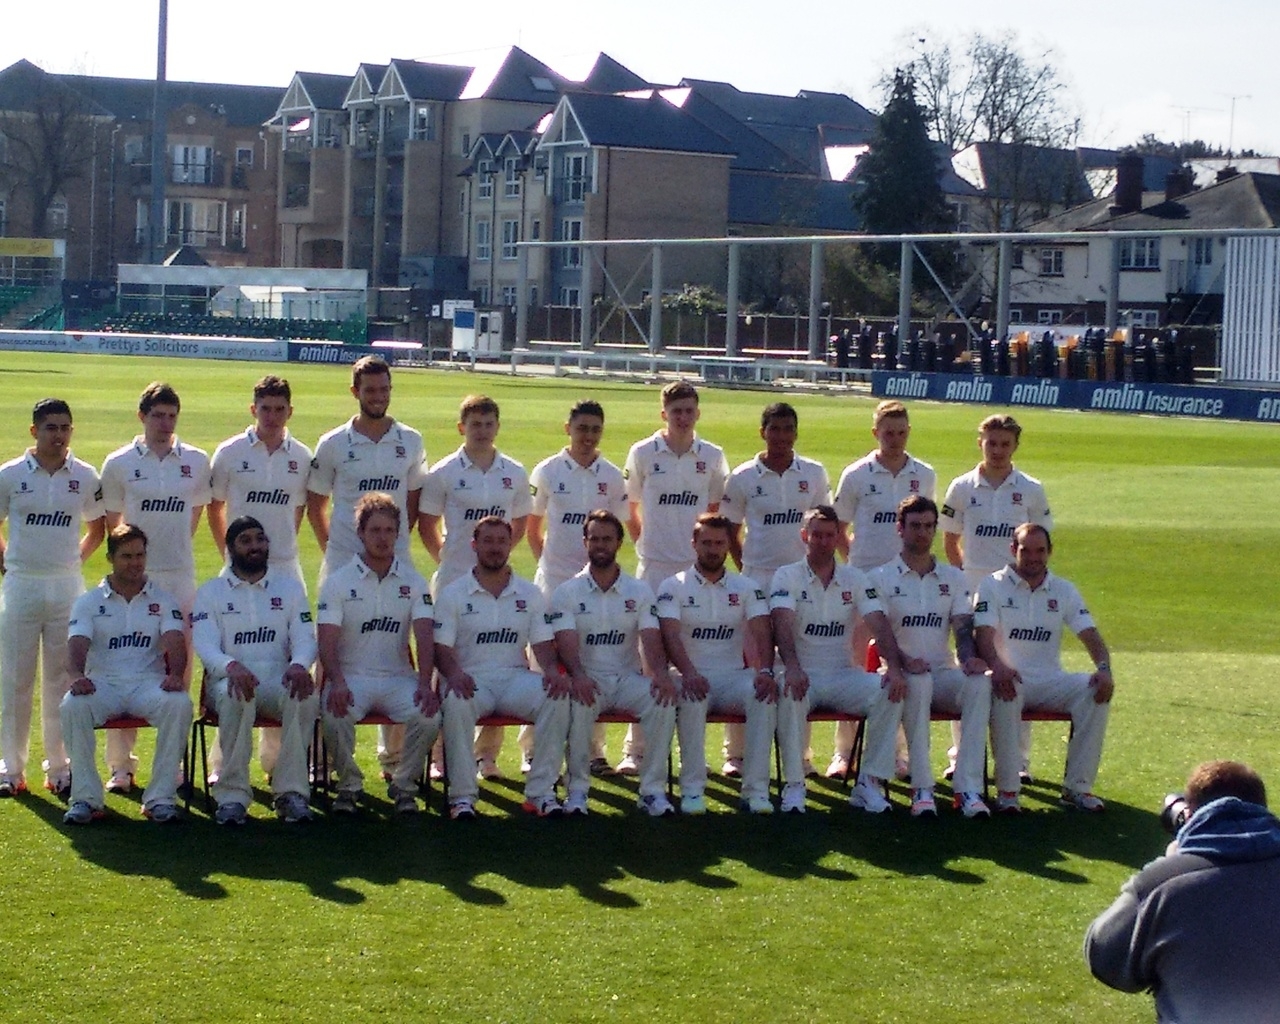 Essex Cricket Team for 1280 x 1024 resolution